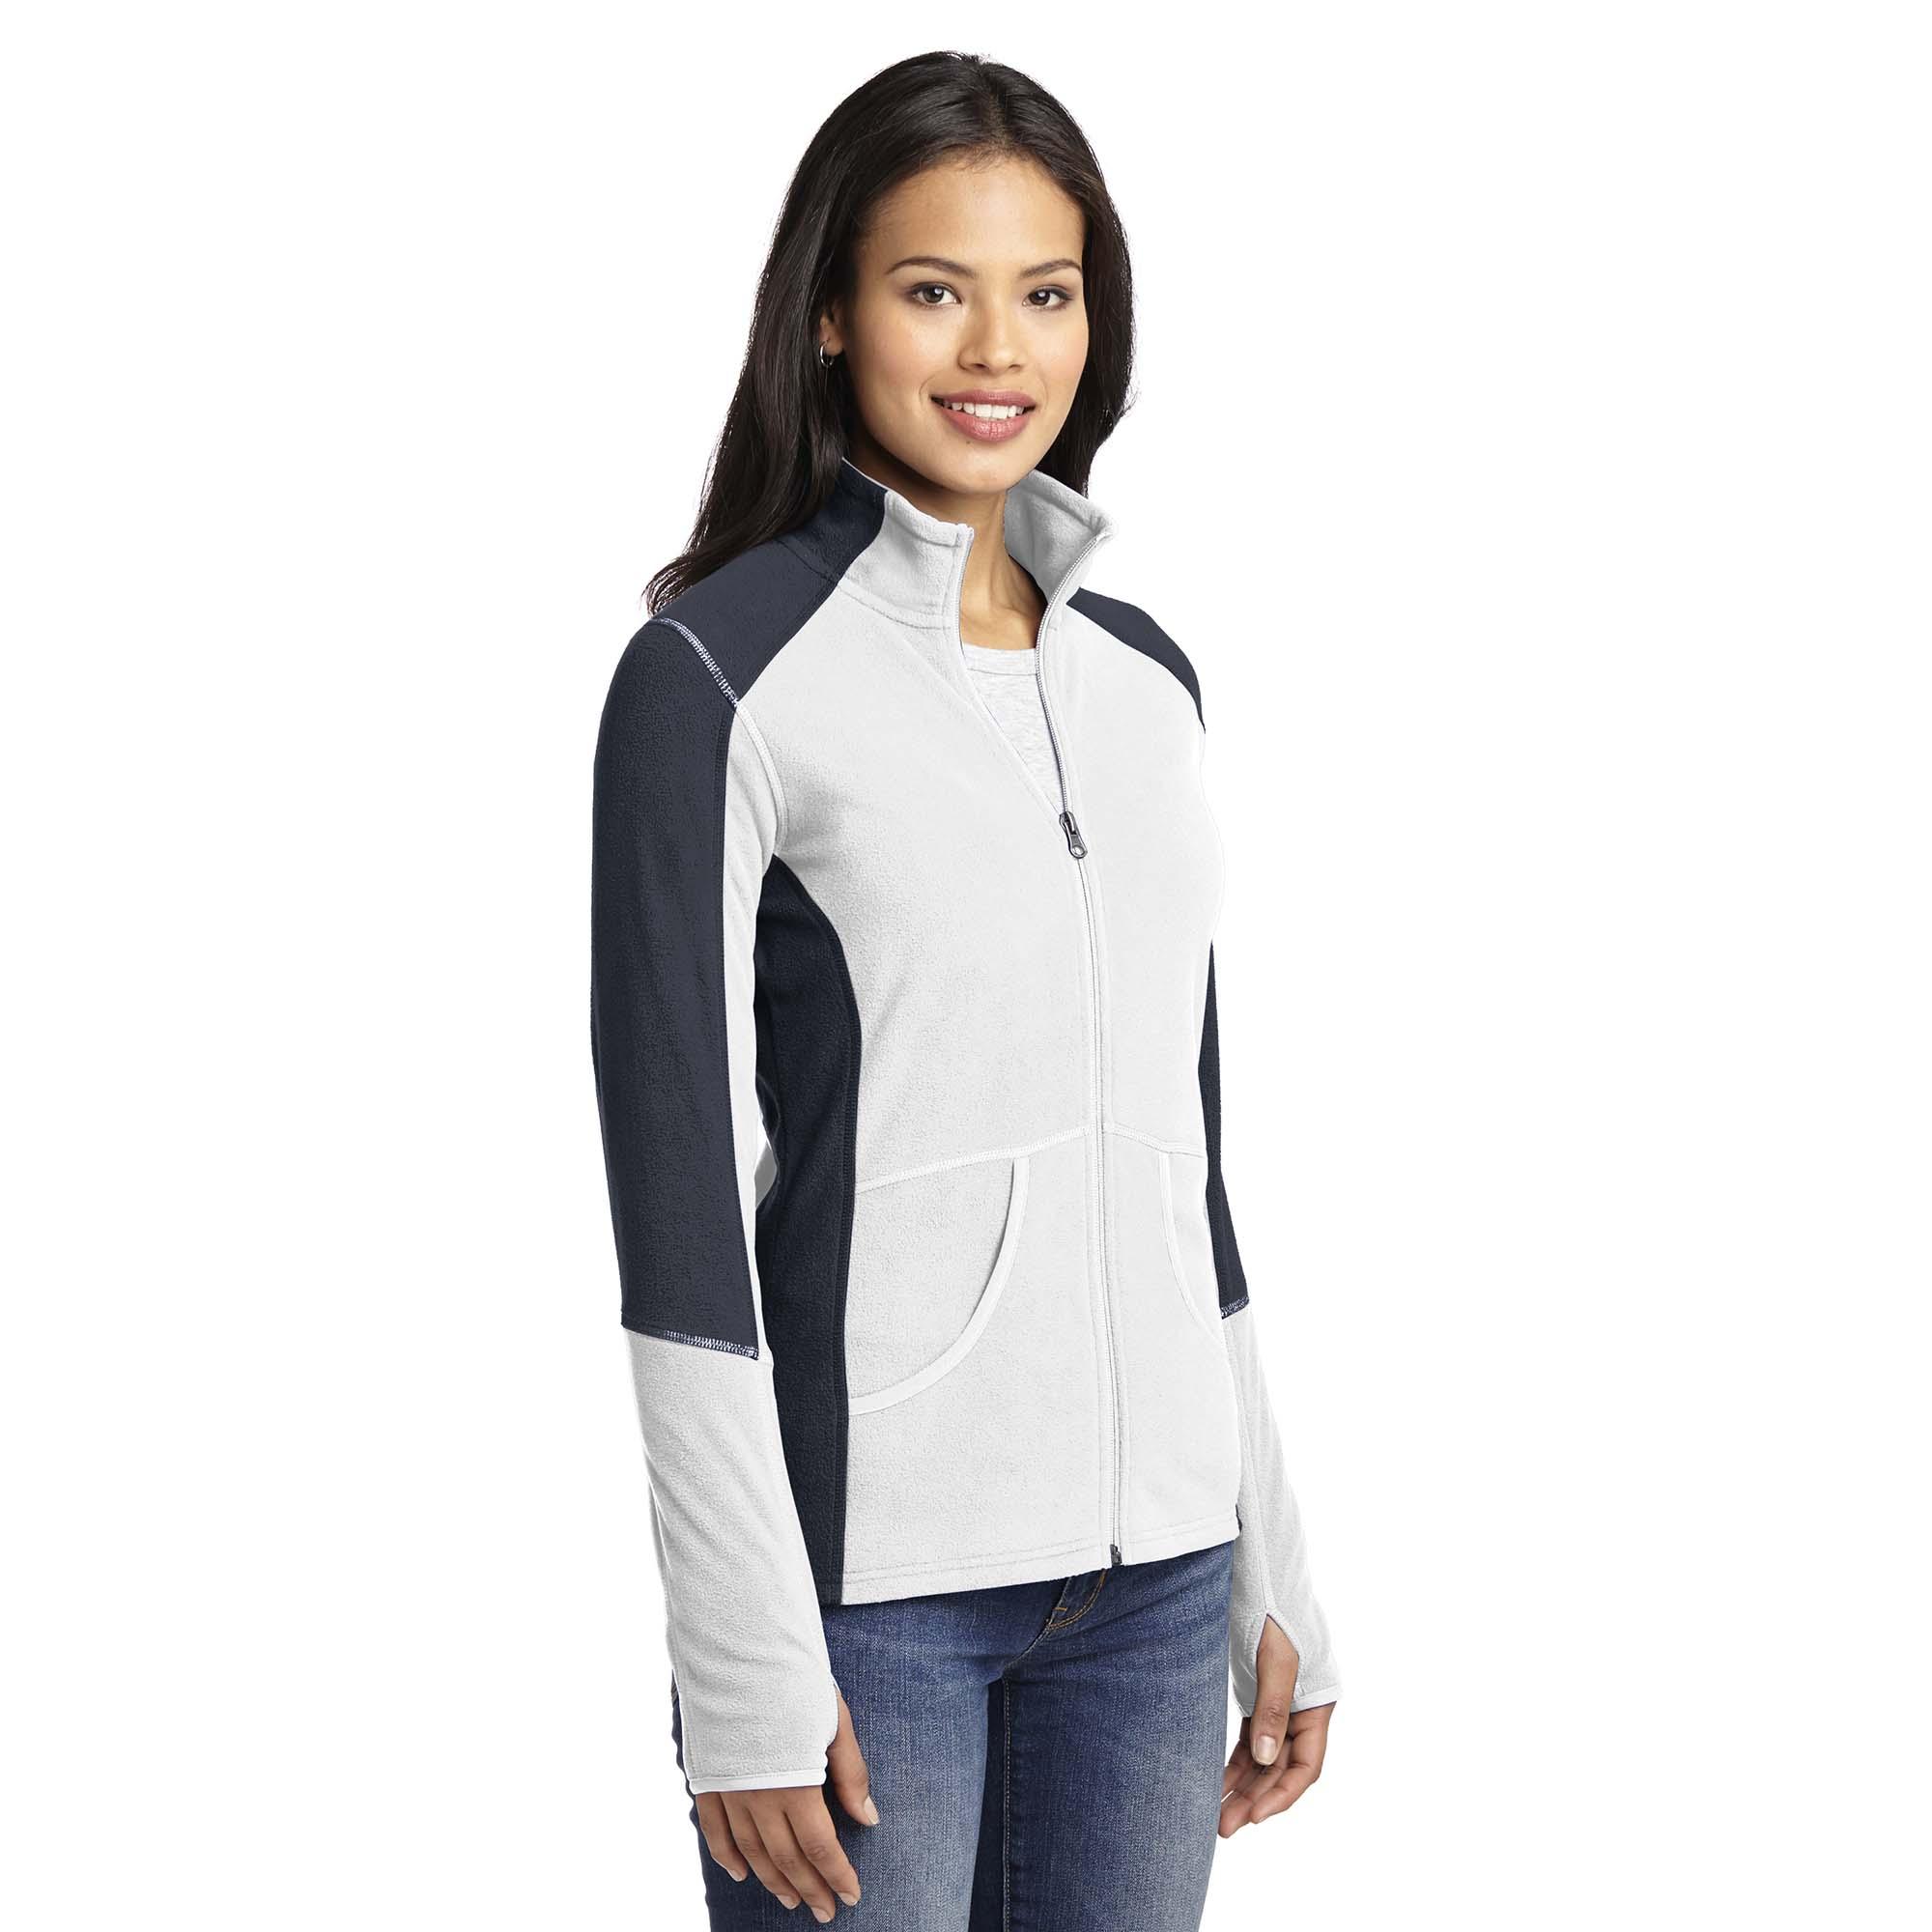 Sport-Tek® Ladies 1/4-Zip Sweatshirt. LST253 - LogoShirtsWholesale